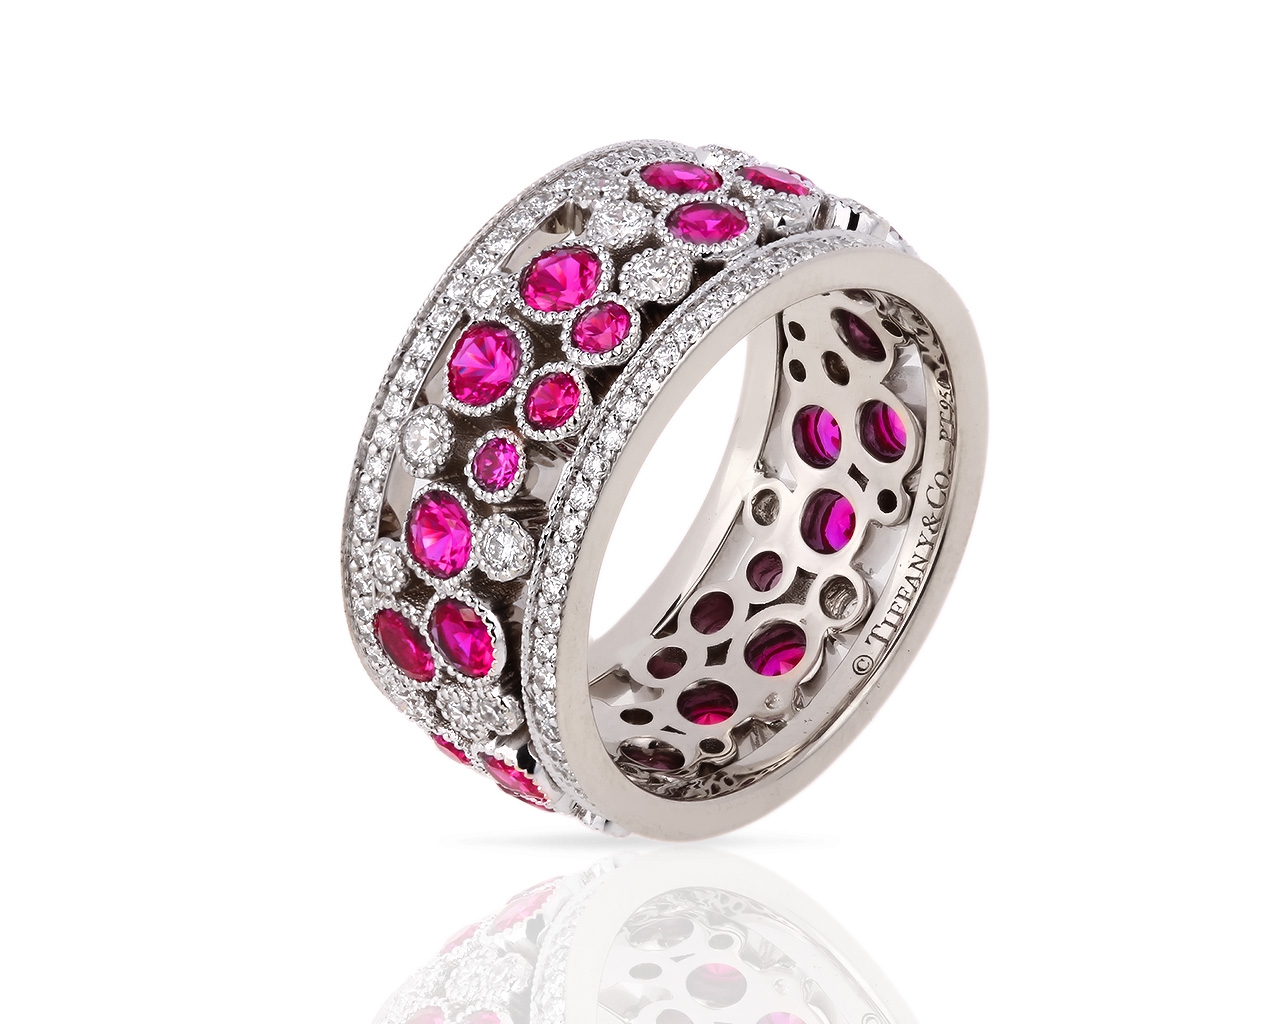 Платиновое кольцо с бриллиантами и рубинами Tiffany&Co